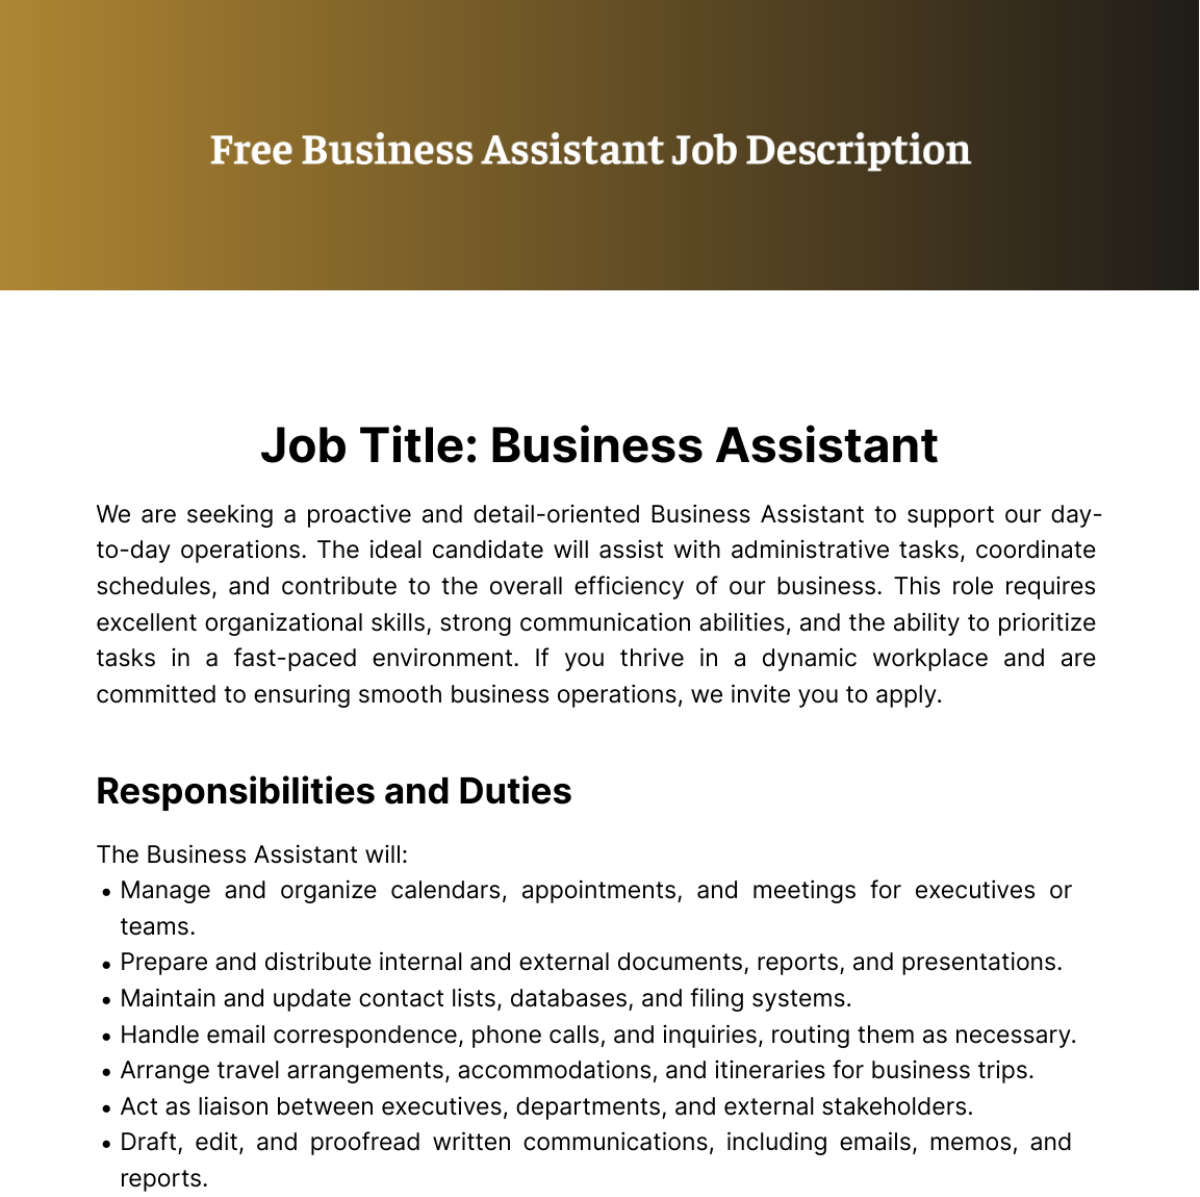 Business Assistant Job Description Template